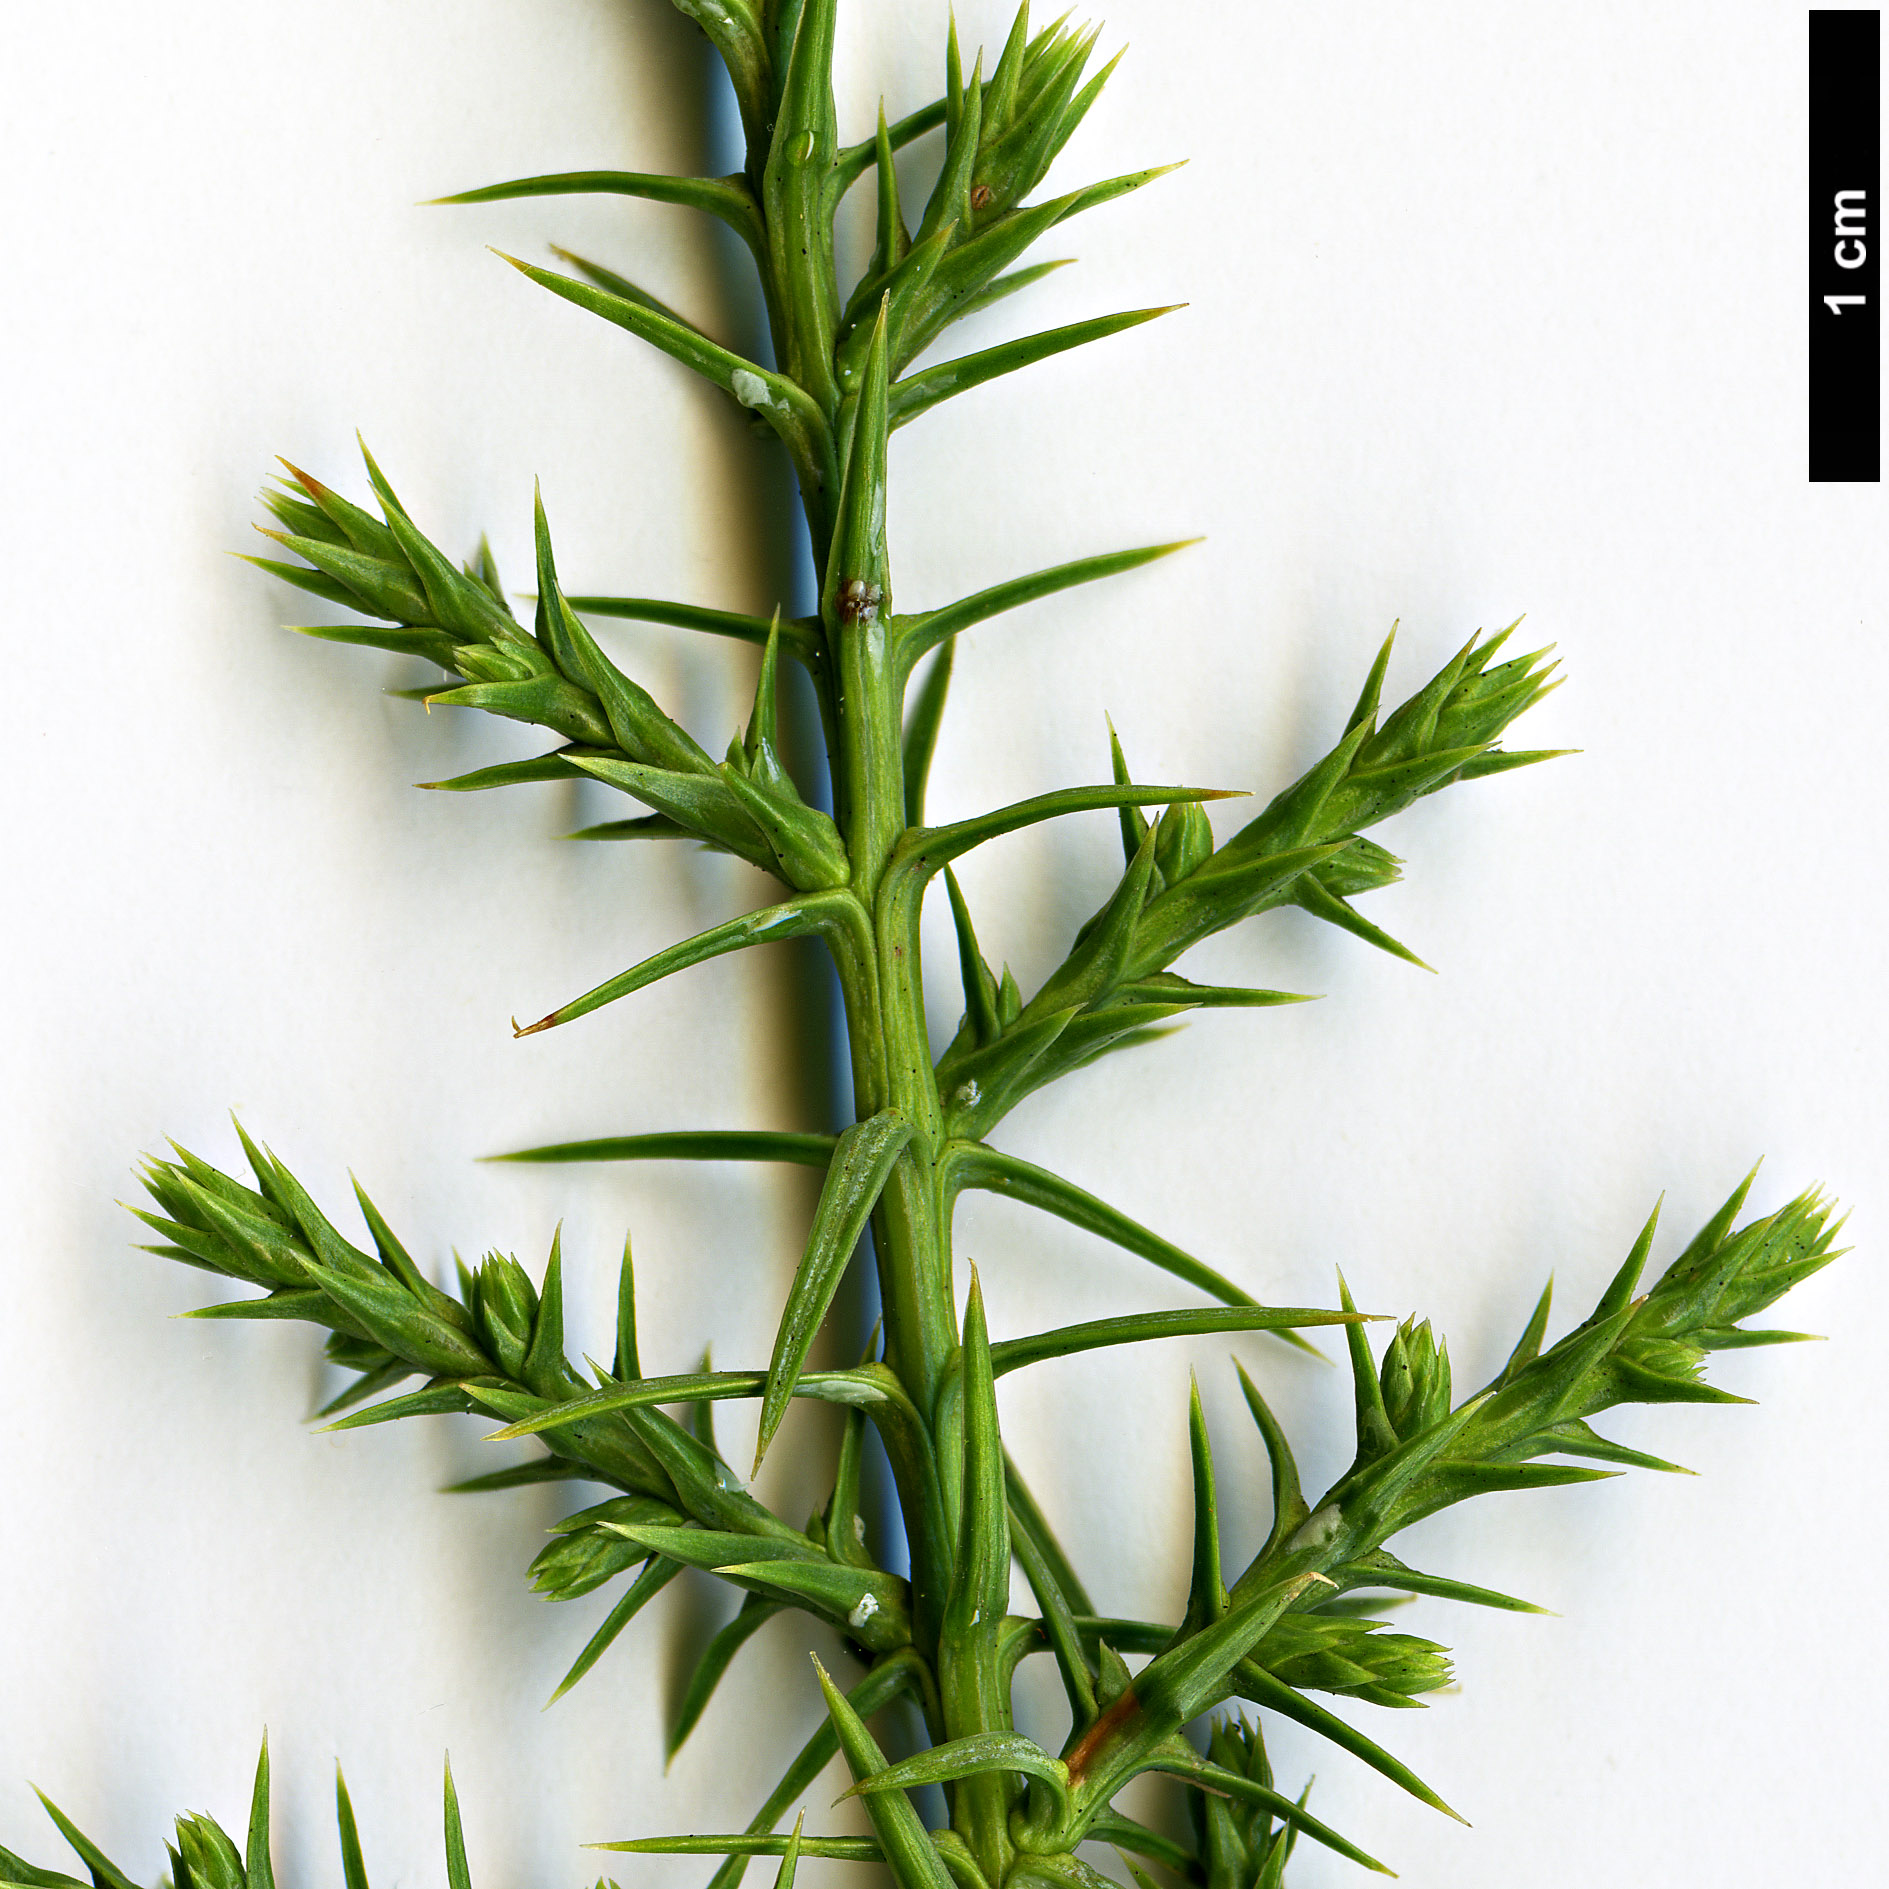 High resolution image: Family: Cupressaceae - Genus: Juniperus - Taxon: monosperma